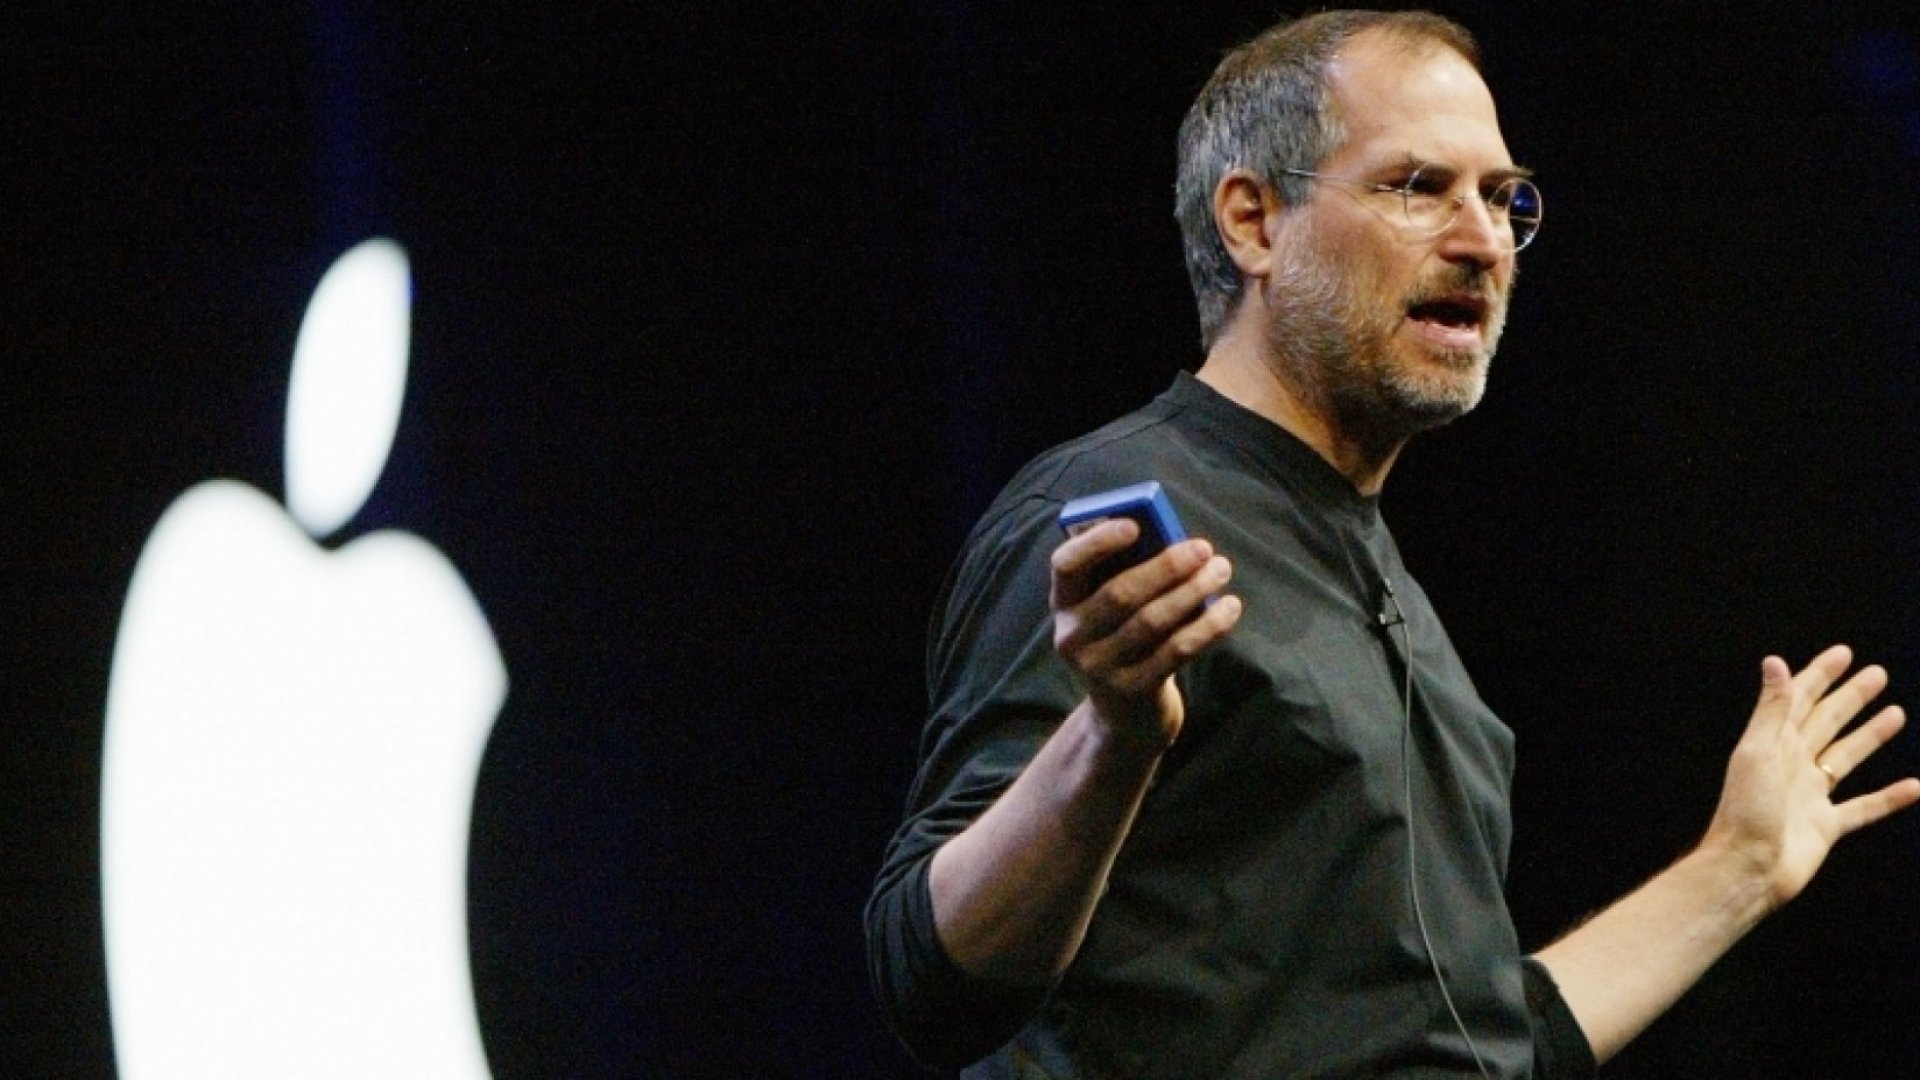 Steve Jobs on Stage